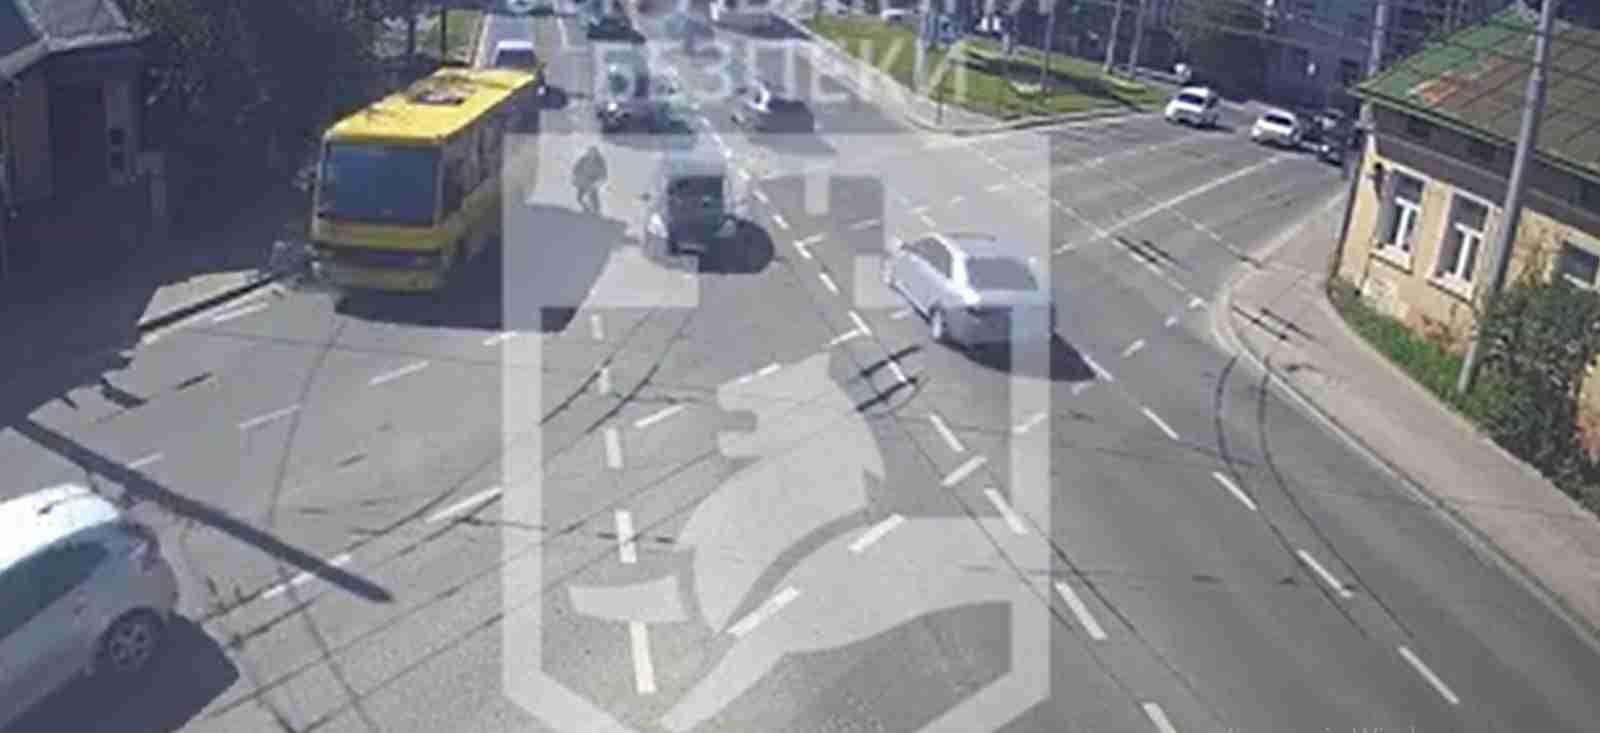 Камери міста зафіксували момент зіткнення автомобіля та велосипедиста у Львові (ВІДЕО)